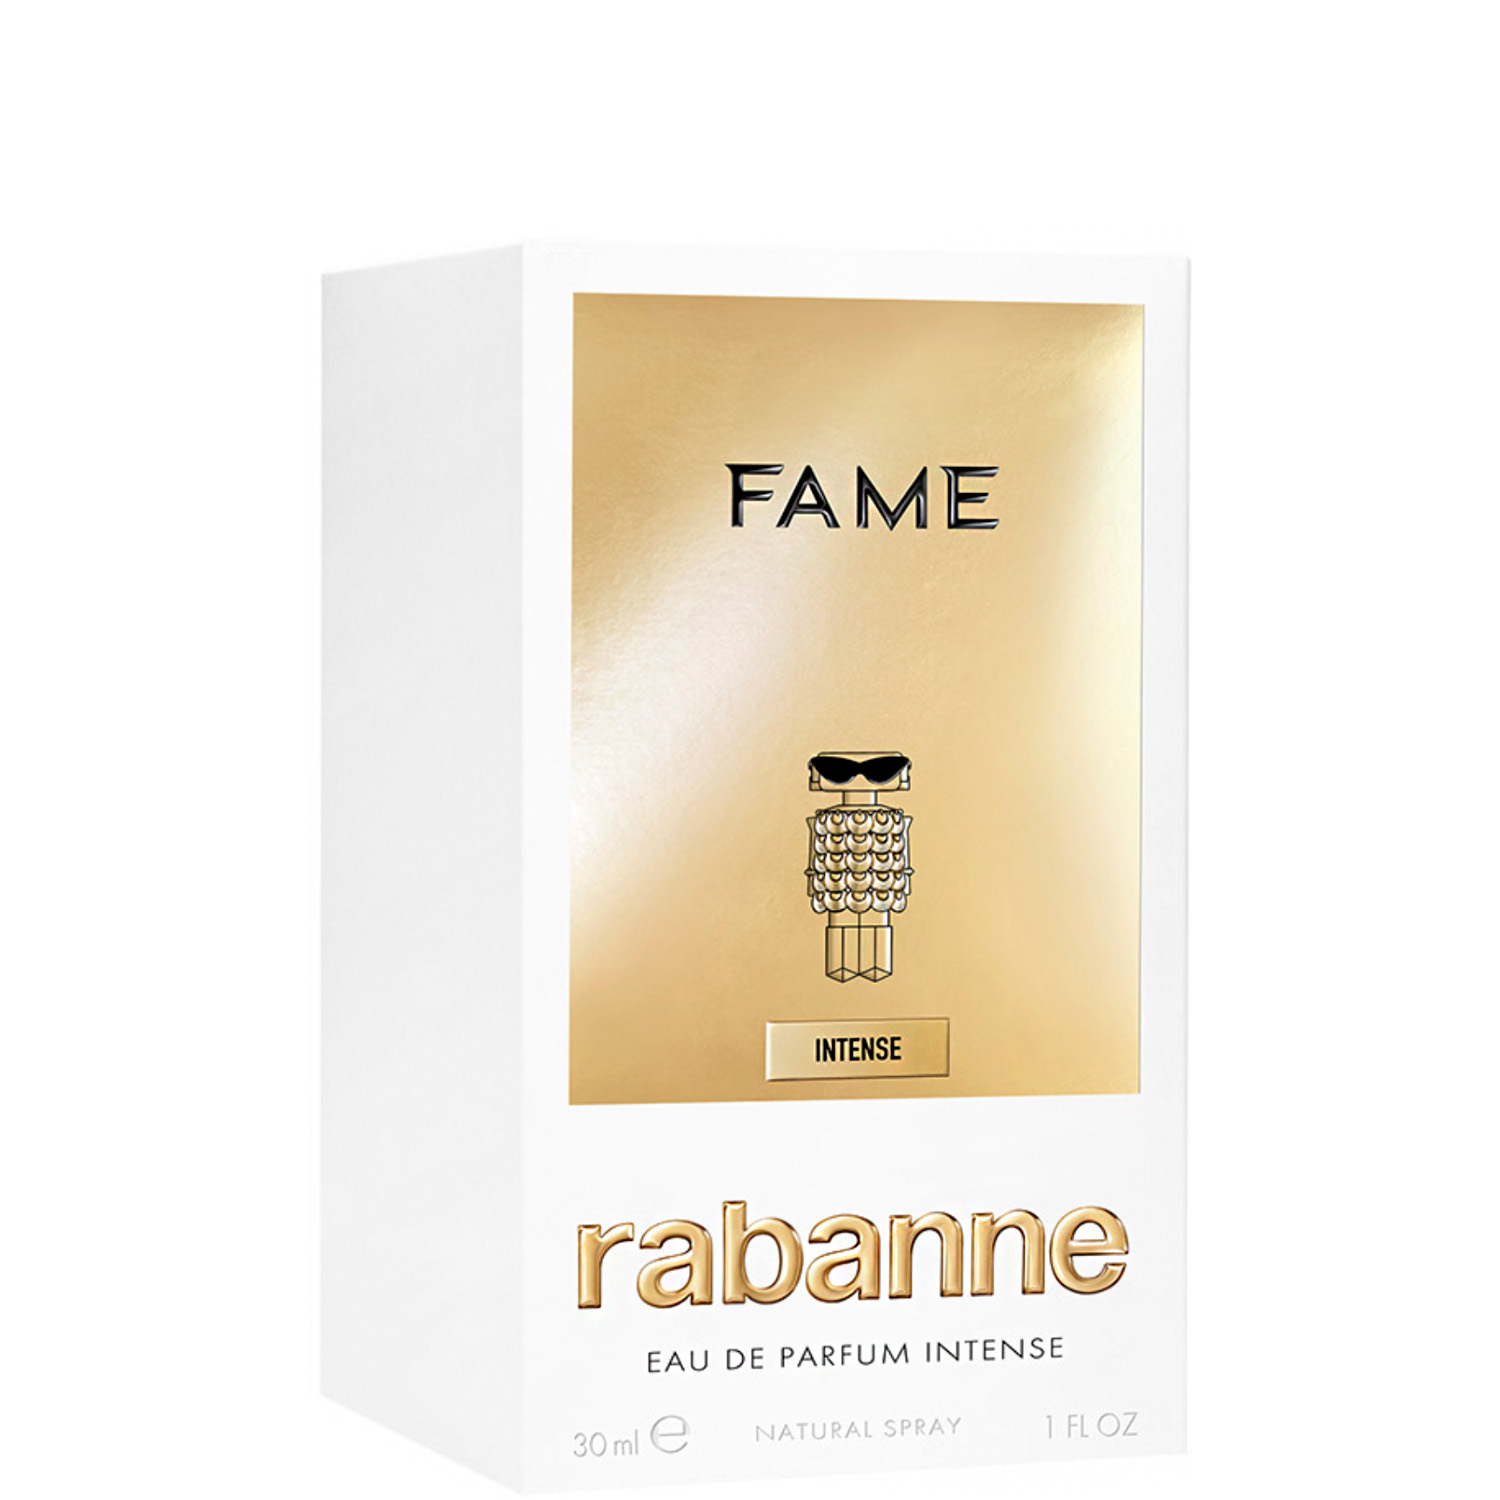 Rabanne Fame Eau de Parfum Intense 30ml